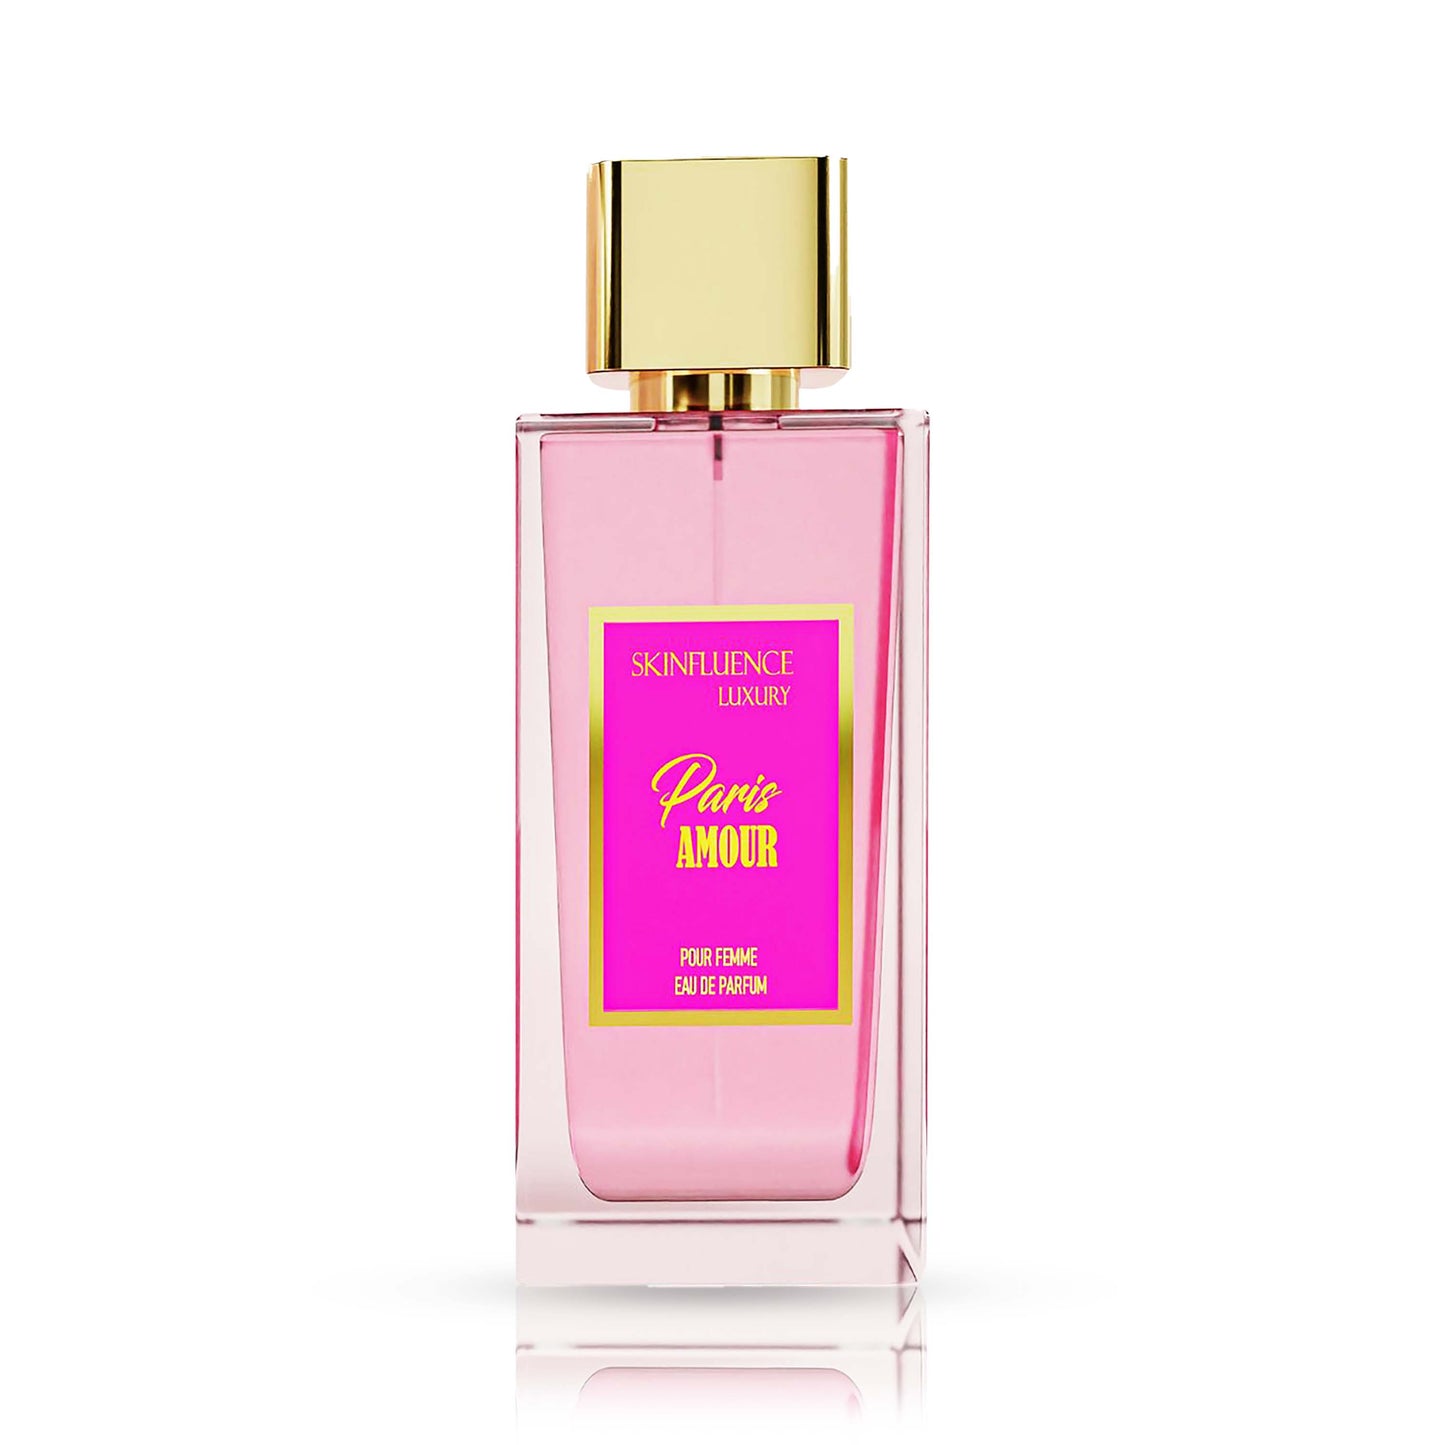 SKINFLUENCE Luxury Paris Amour Floral Perfume For Women 100Ml - Eau De Parfum